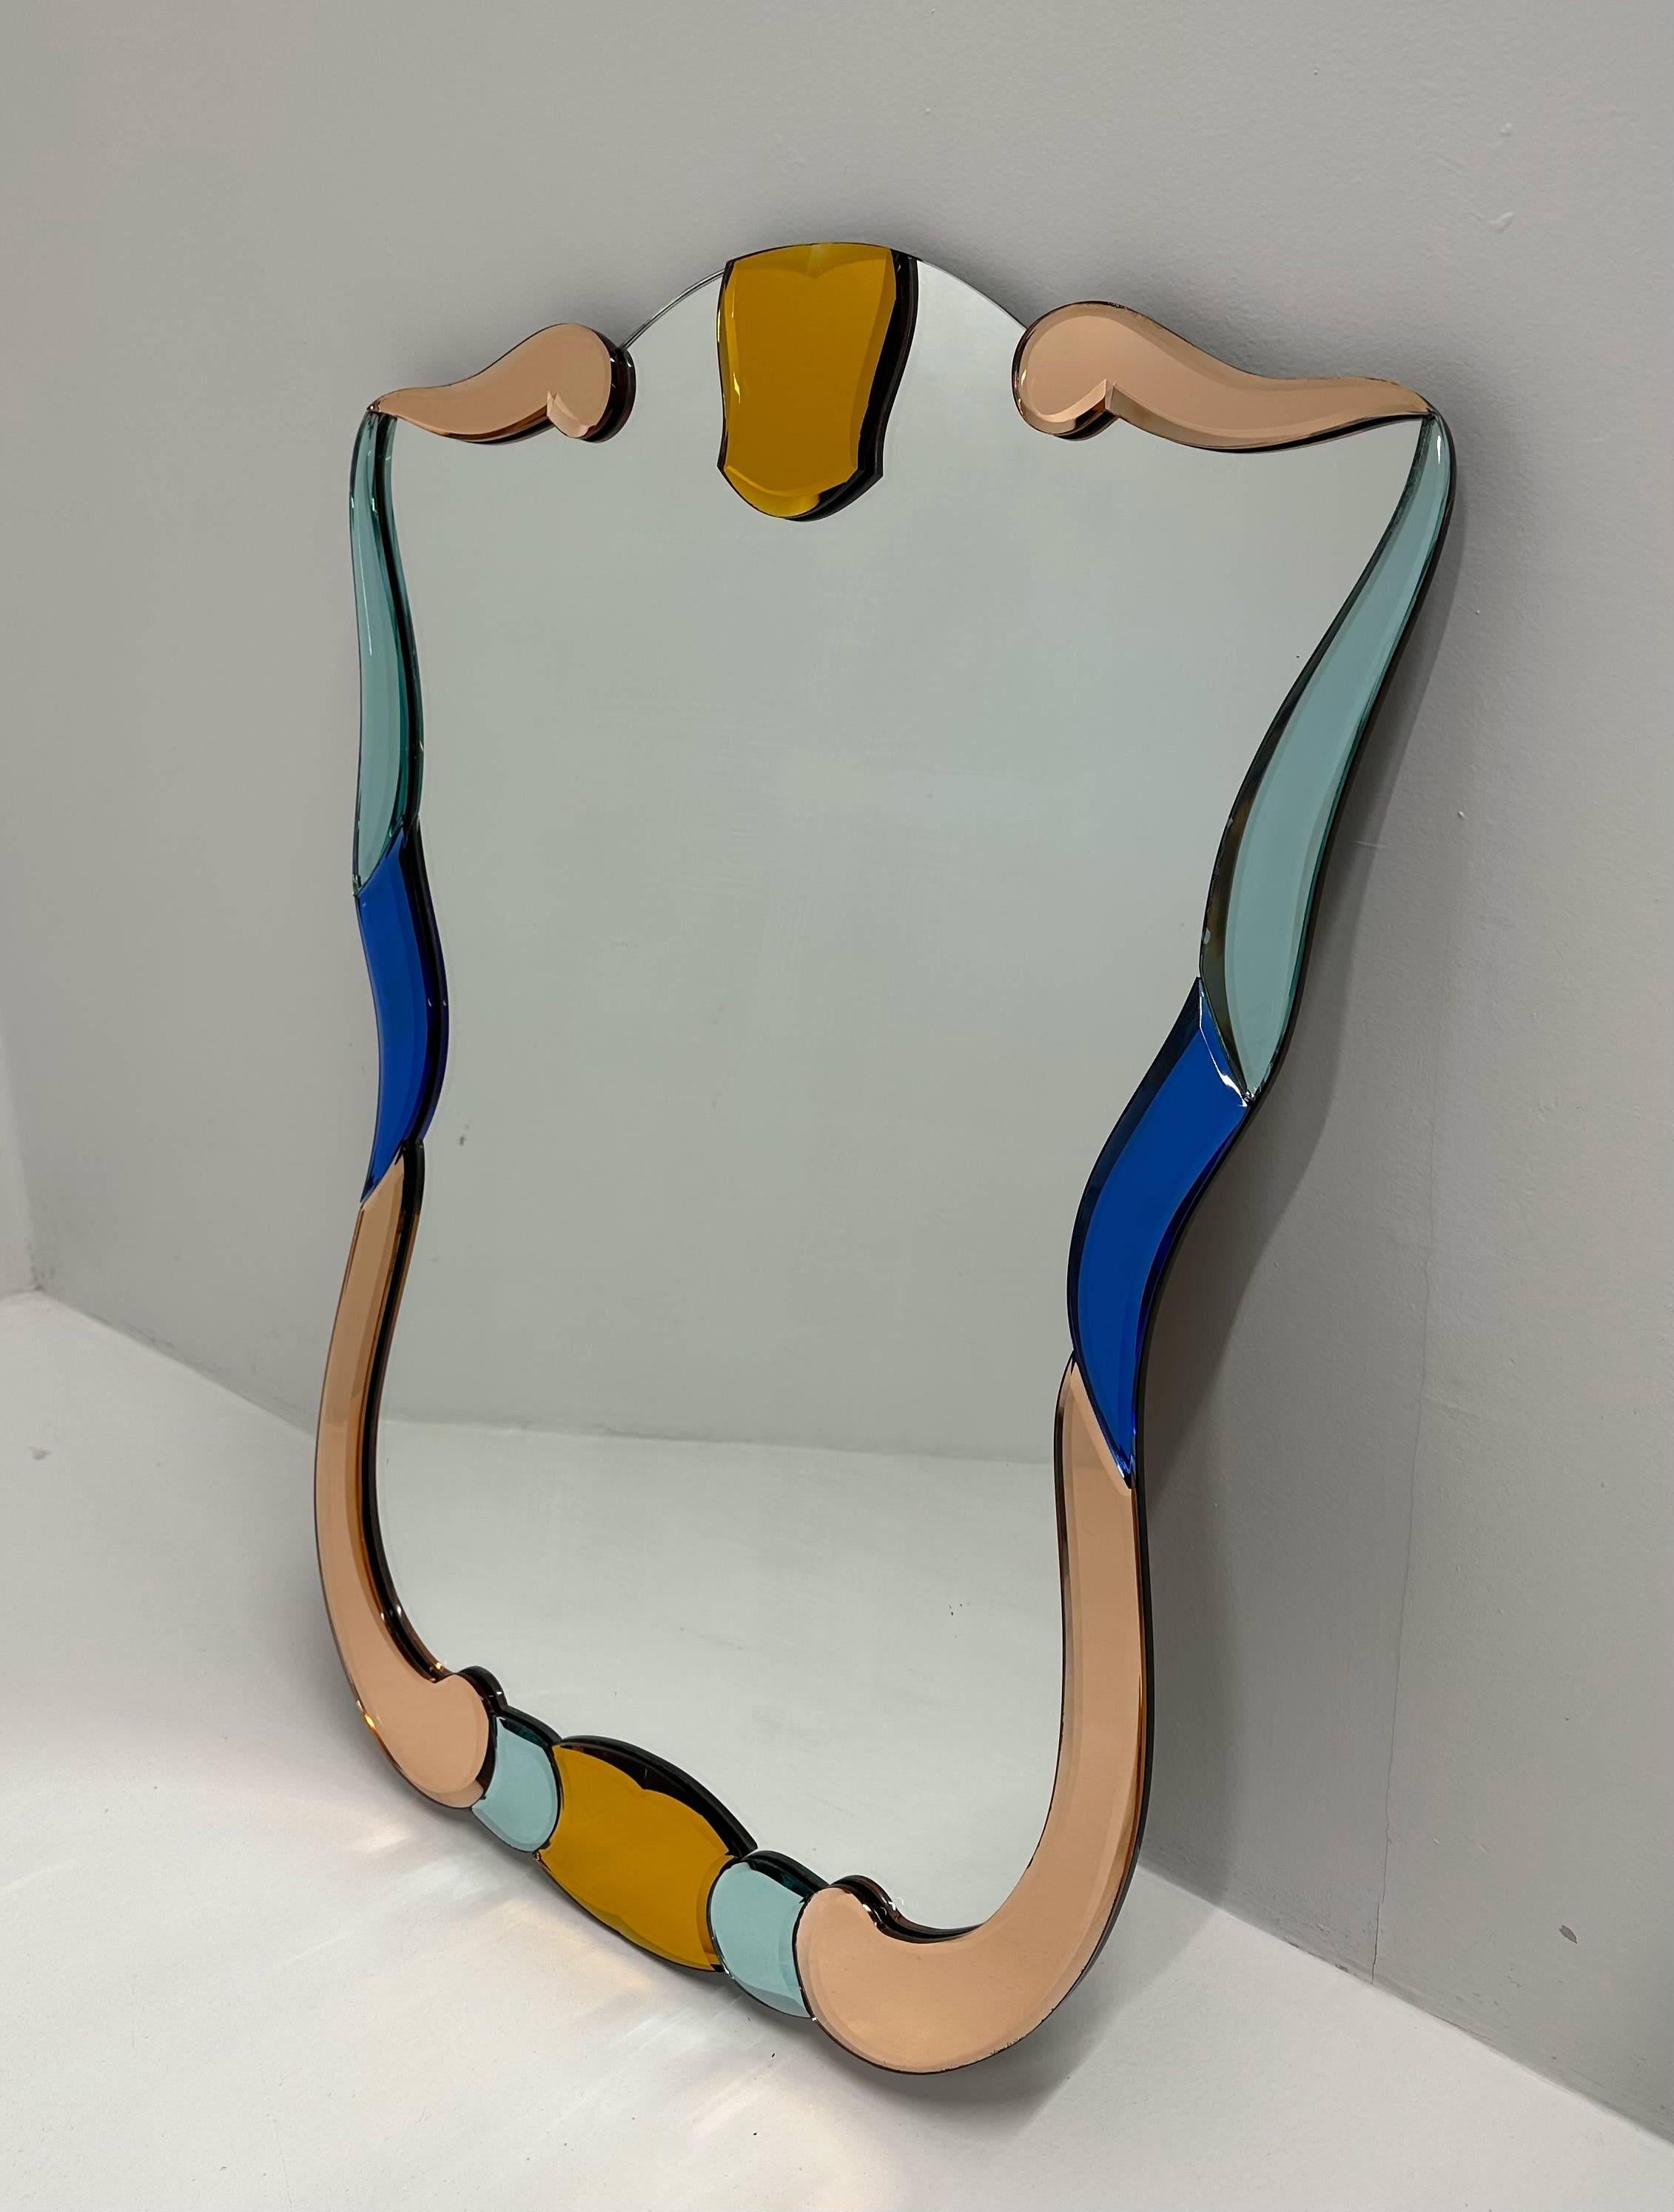 Dieser elegante Spiegel wurde in den 1980er Jahren in Italien hergestellt, genauer gesagt in Murano (in der Nähe von Venedig, der Welthauptstadt der Glasherstellung). Der zentrale Spiegel wird von pastellfarbenen Murano-Spiegeln in verschiedenen